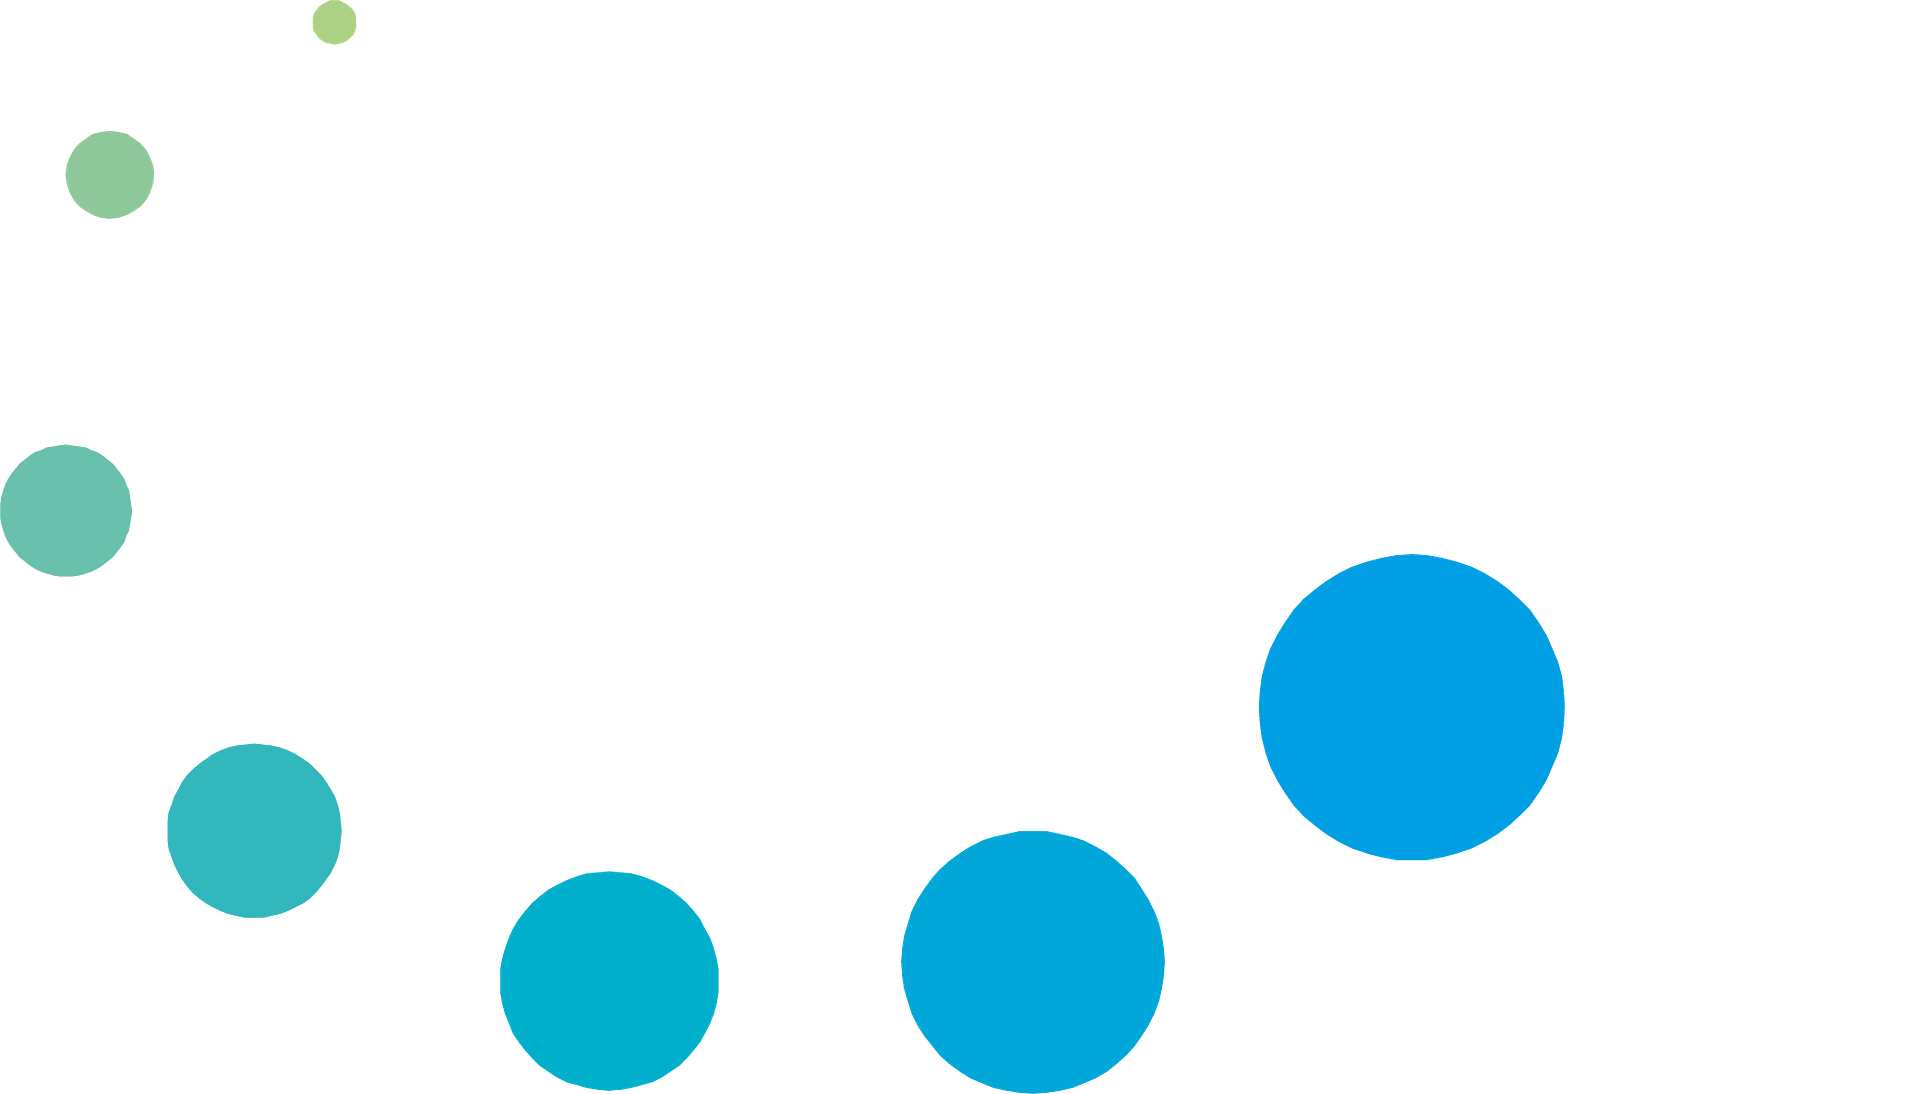 AllRead Logo